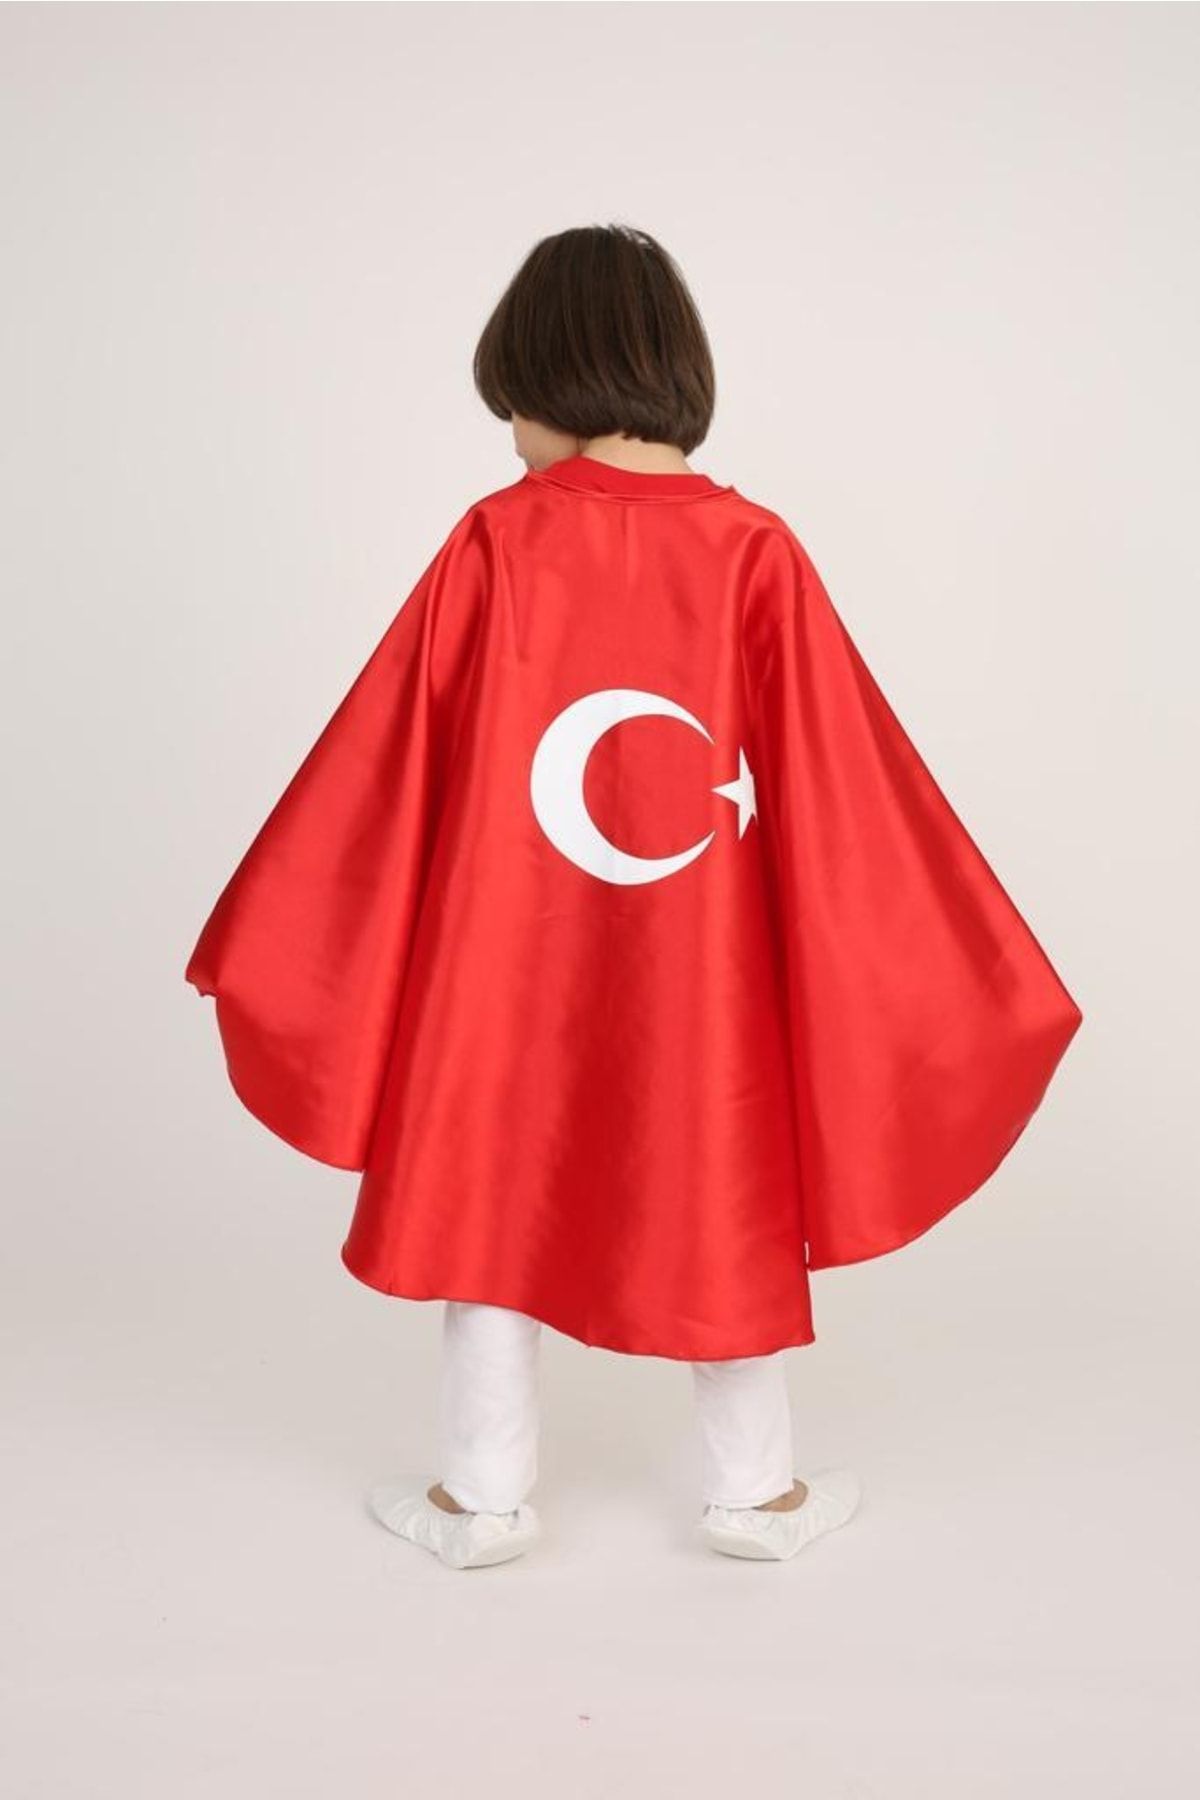 FATELLA Atatürk Baskılı Unısex Çocuk Pelerini - 23 Nisan Atatürk Baskılı Unisex Çocuk Pelerini